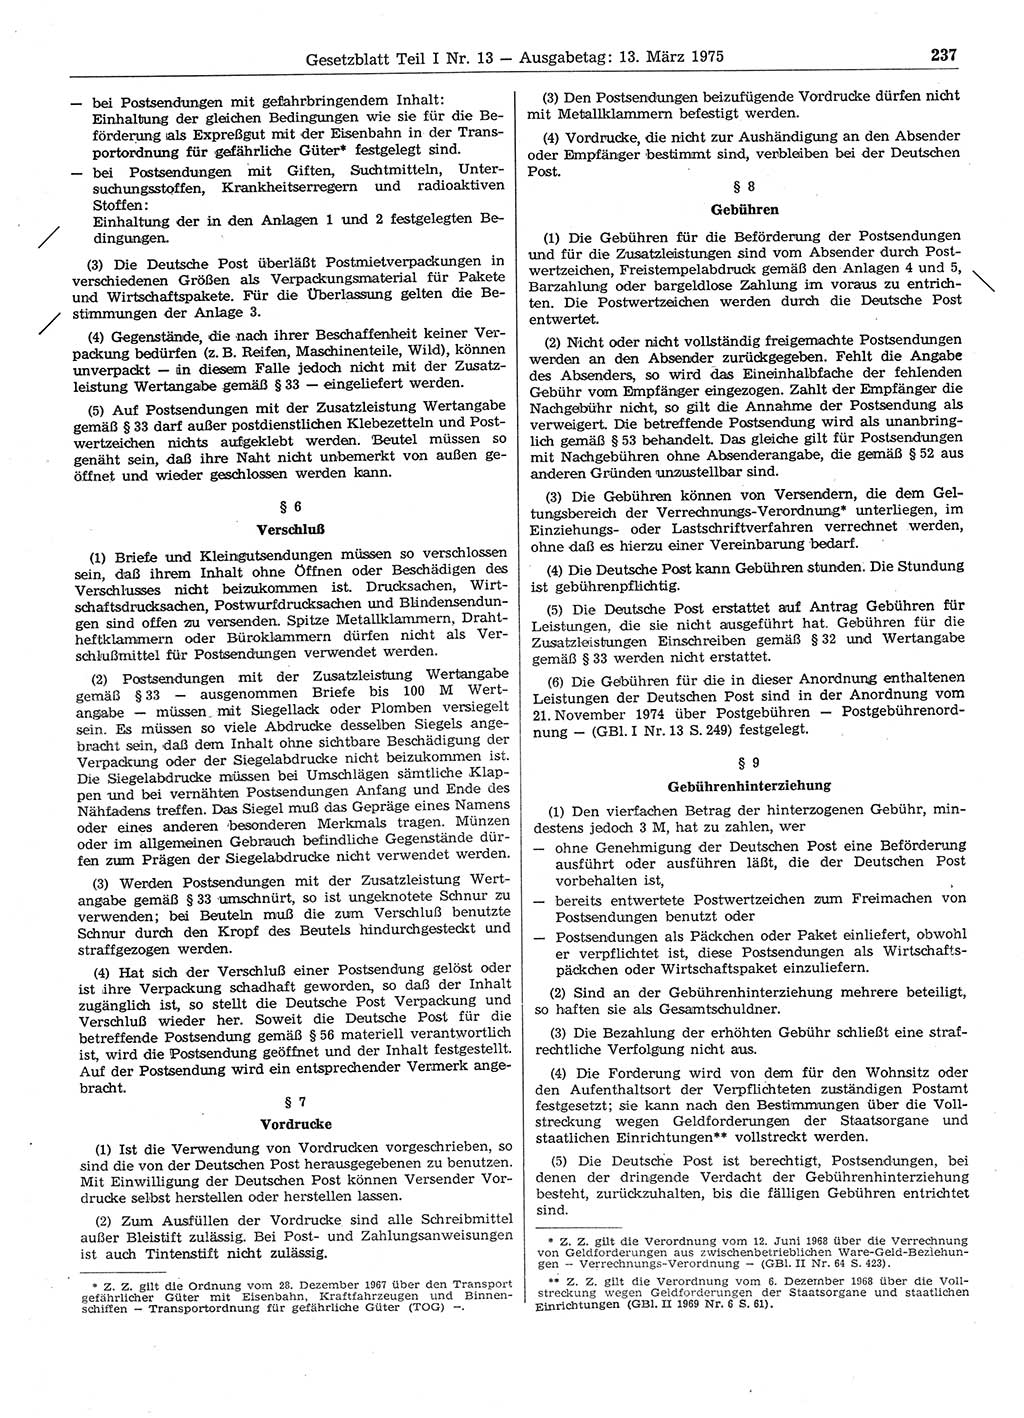 Gesetzblatt (GBl.) der Deutschen Demokratischen Republik (DDR) Teil Ⅰ 1975, Seite 237 (GBl. DDR Ⅰ 1975, S. 237)